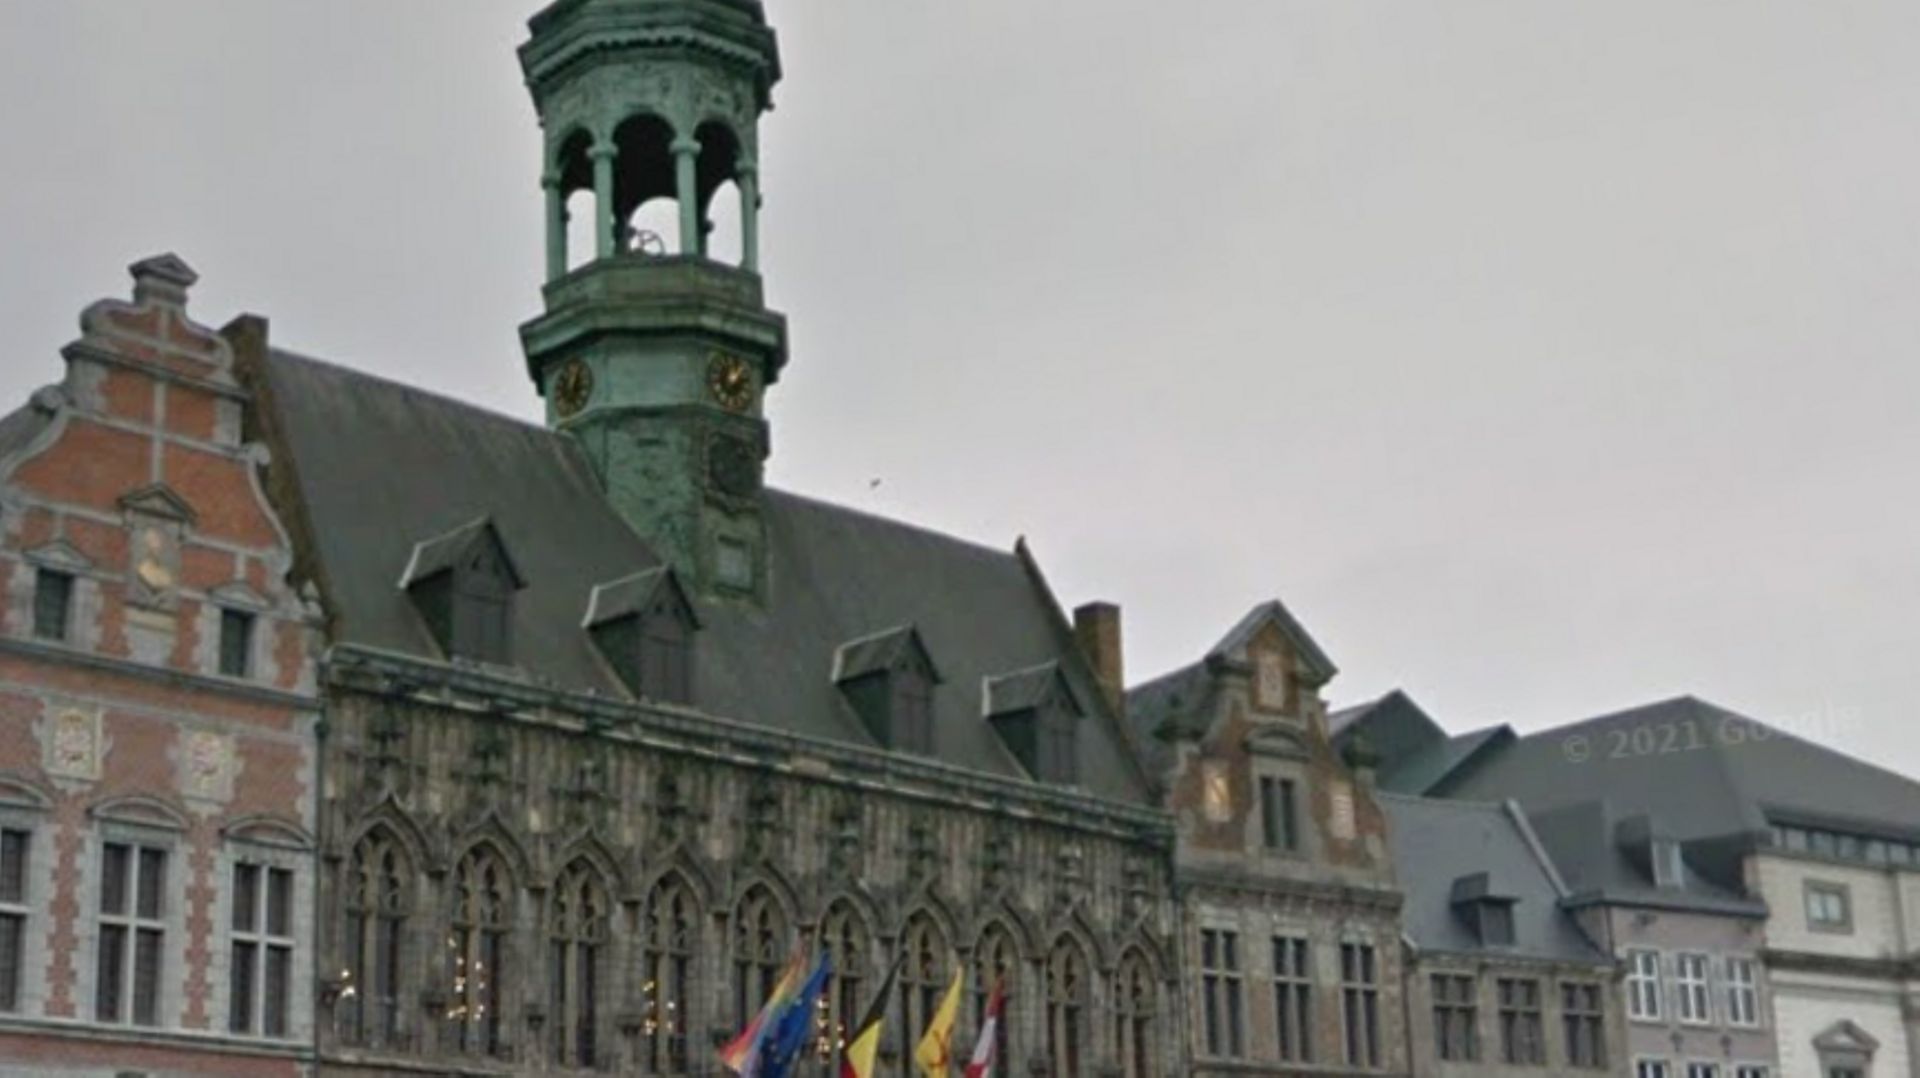 L'Hôtel de ville de Mons